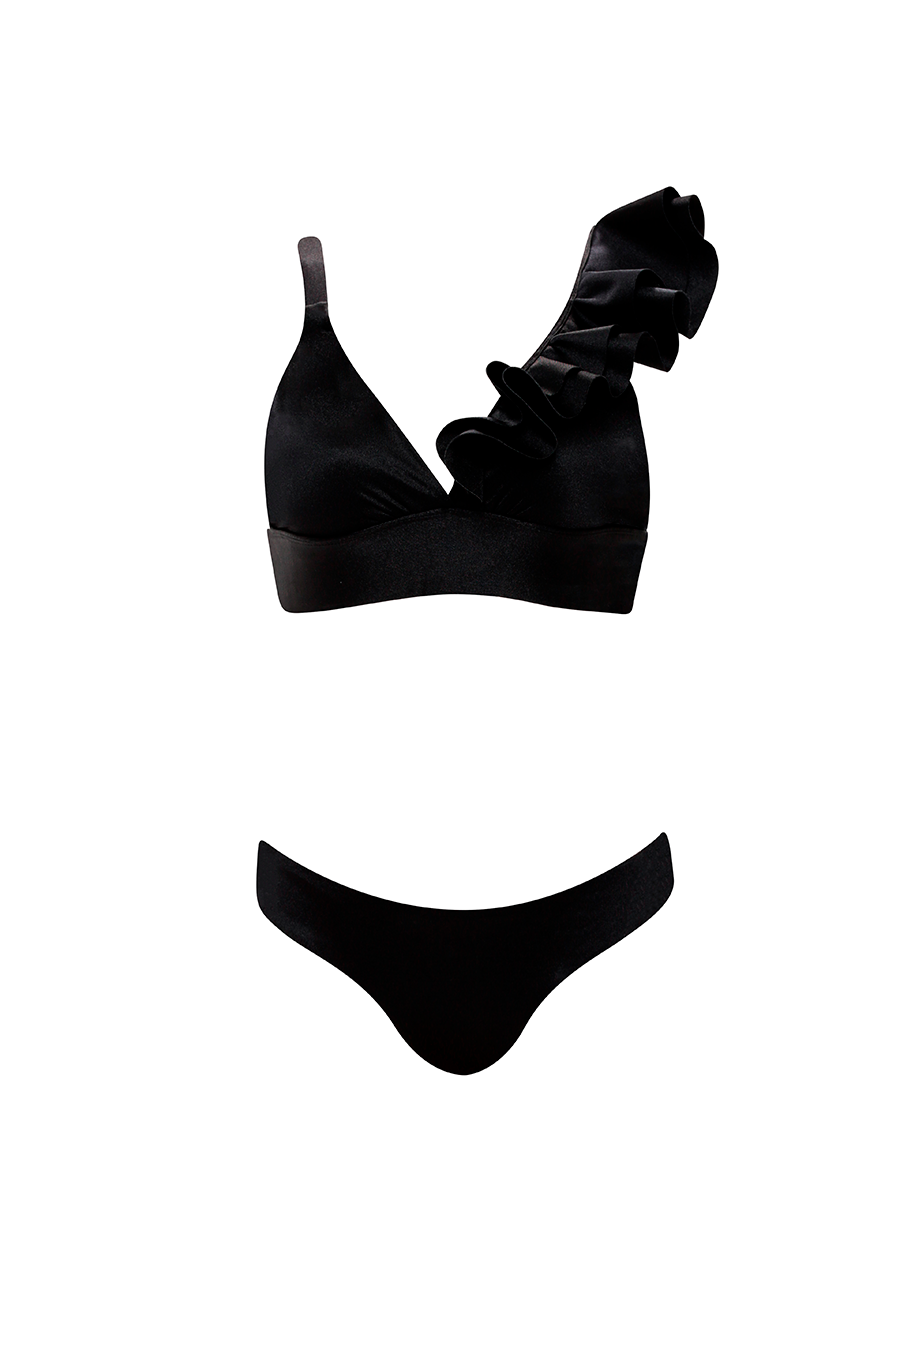 Soleil  Ruffled Black Bikini Top